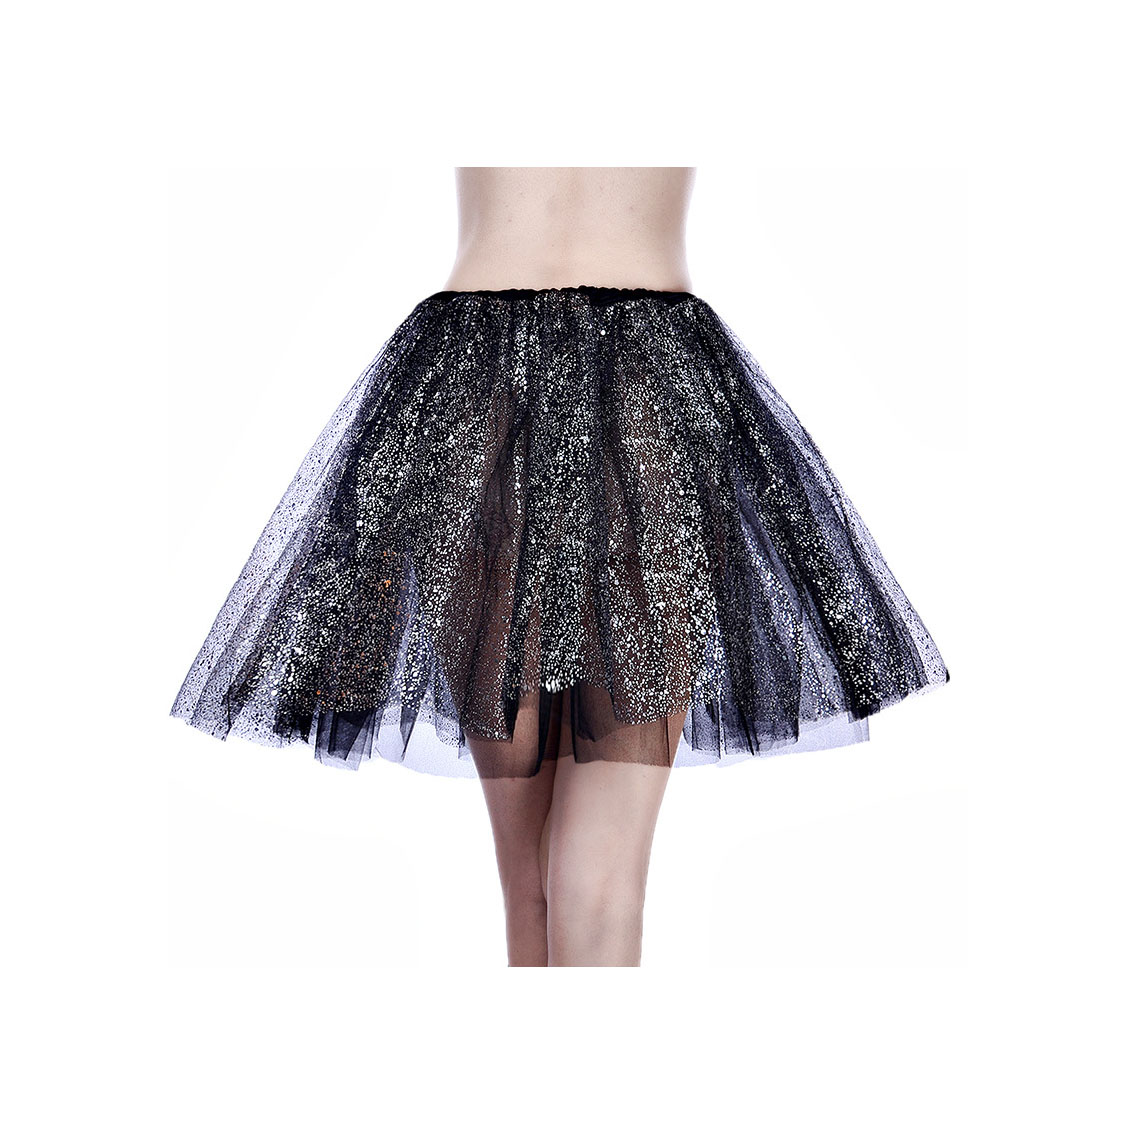 Adult Tutu Skirt Sequin Gilding Polka Dot 3 Layers Party Dance Ballet Pettiskirt Tulle Girl Mini Skirt Black